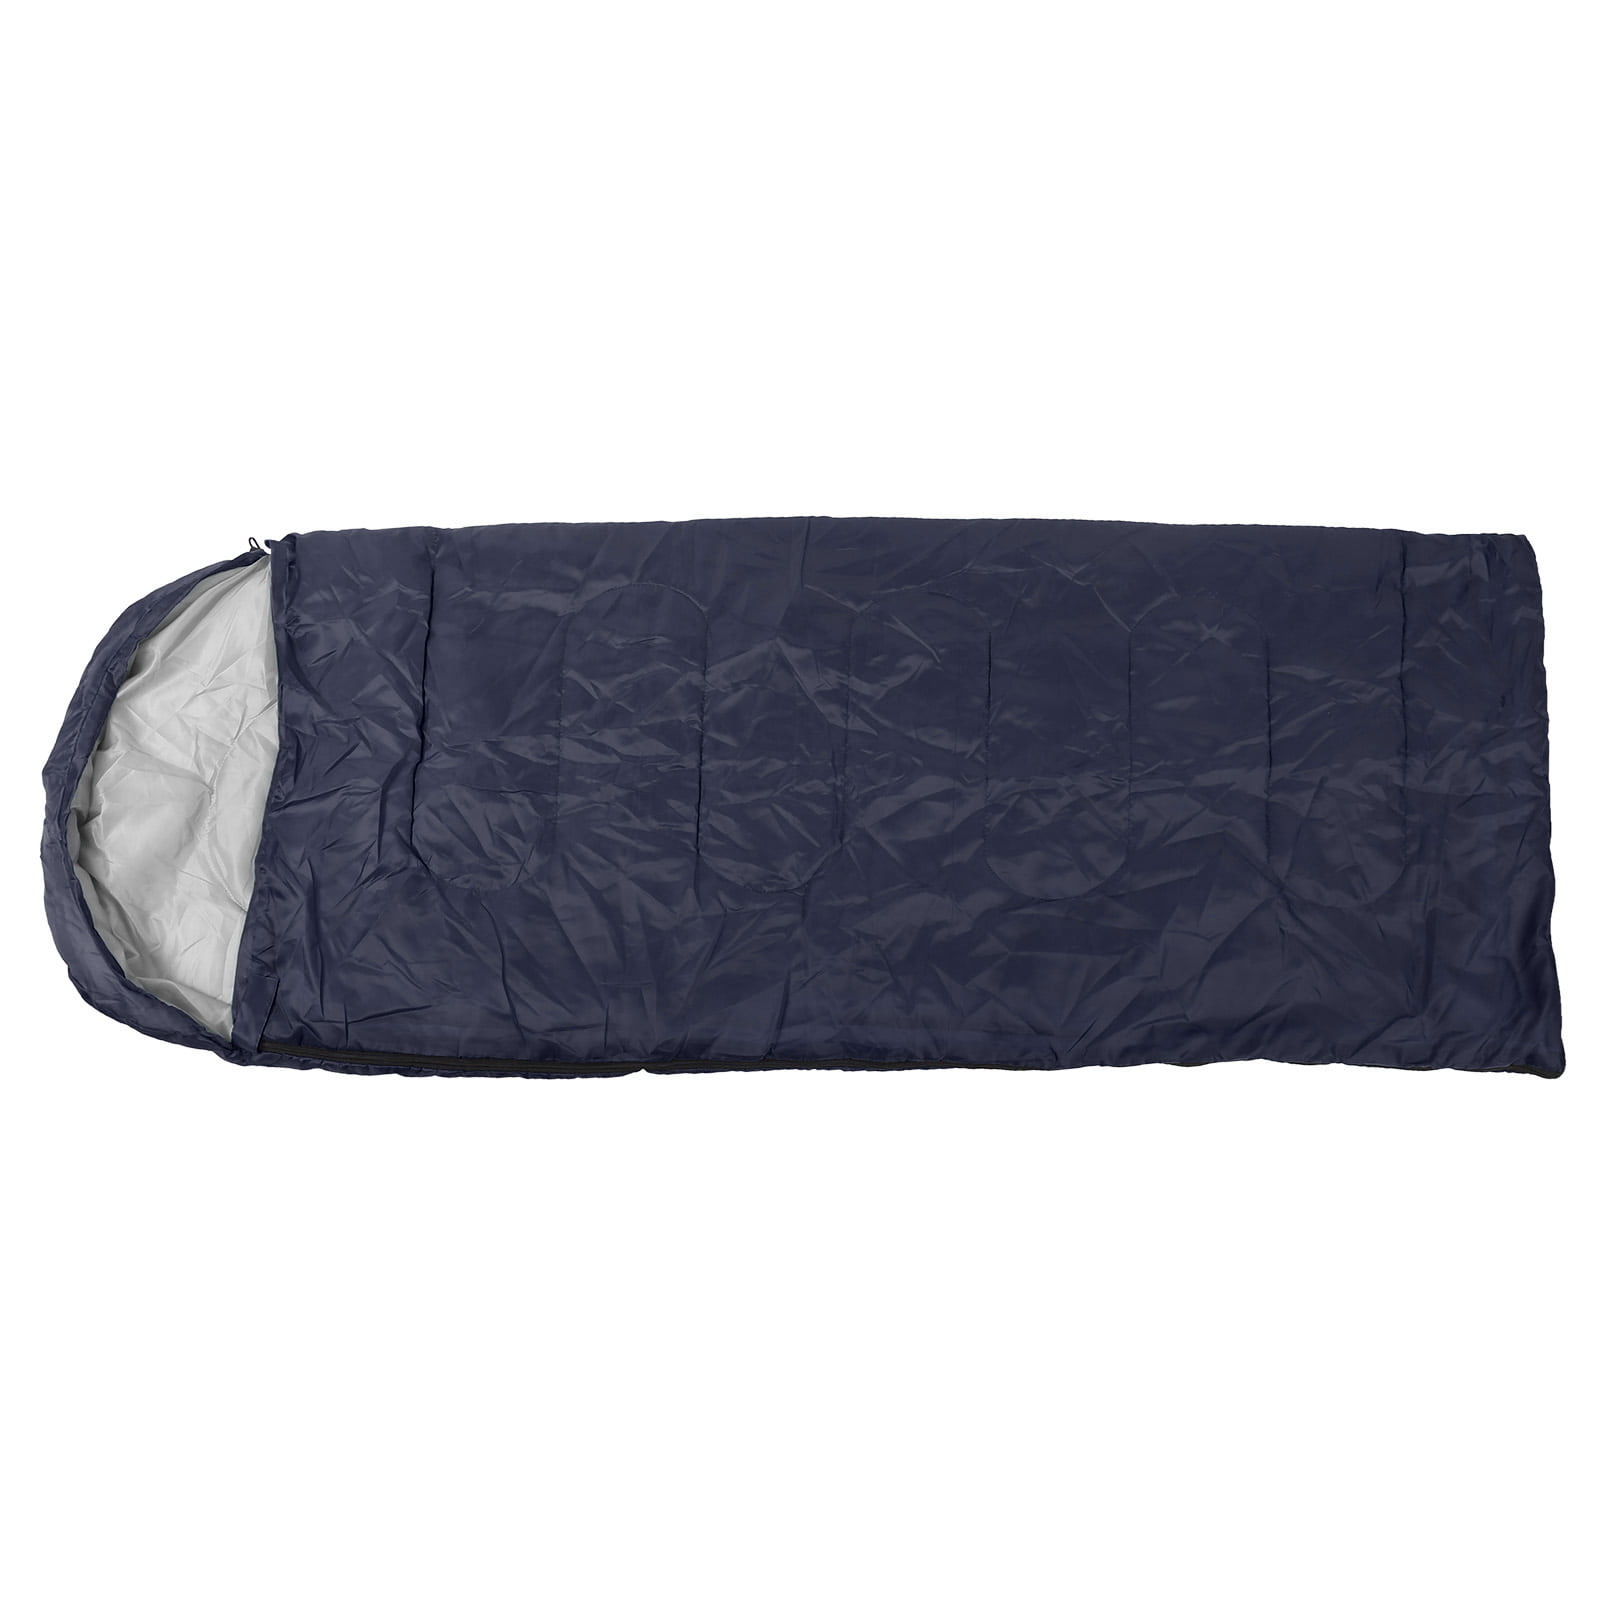 Tebru Waterproof Sleeping Camping Sleeping Bag, Envelope Design Adult For Kids Home Travel Walmart.com